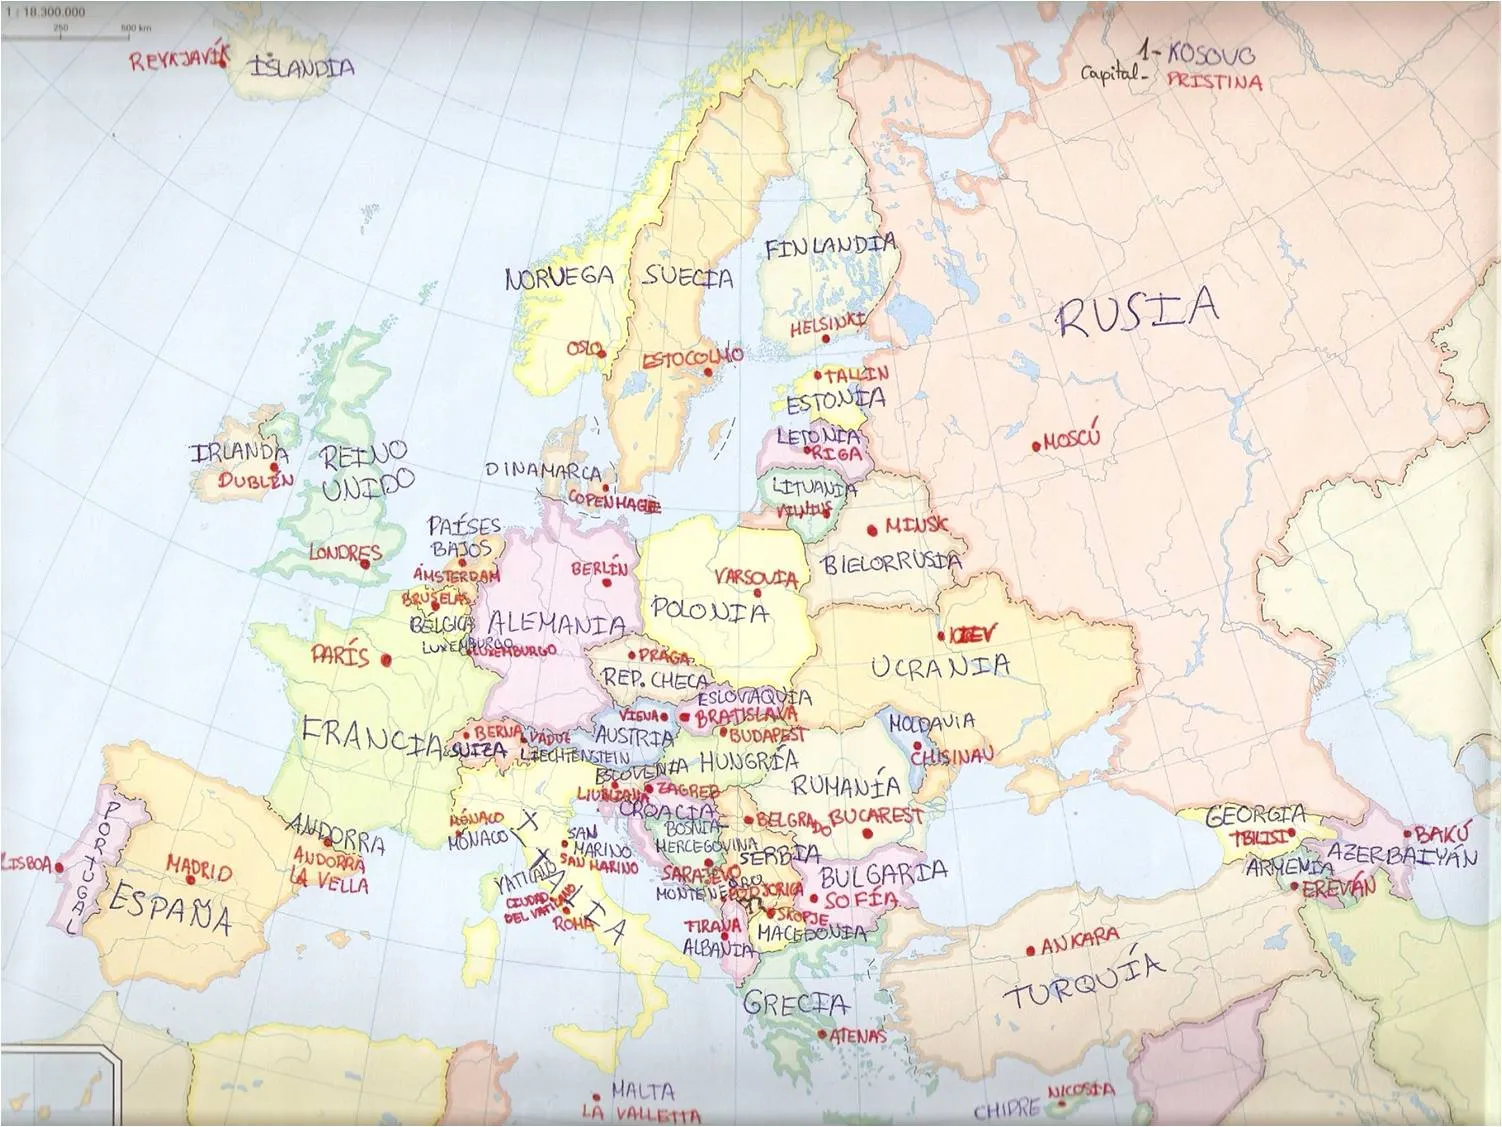 Sociales en Infantes: Lámina de Europa política (países y capitales)